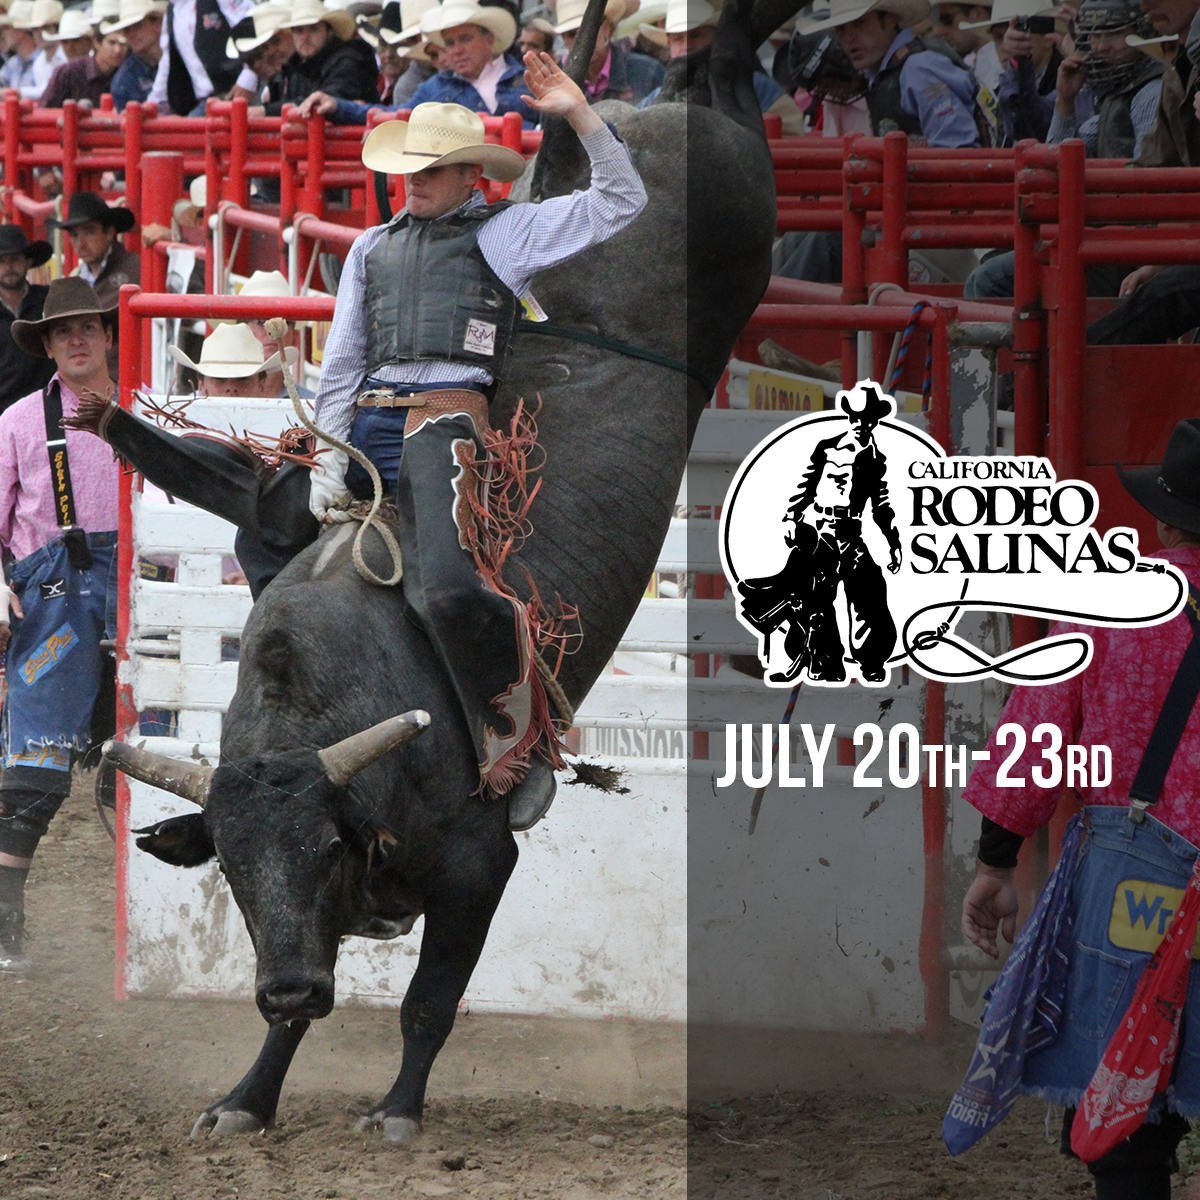 California Rodeo Salinas July 20th - 23rd 2017